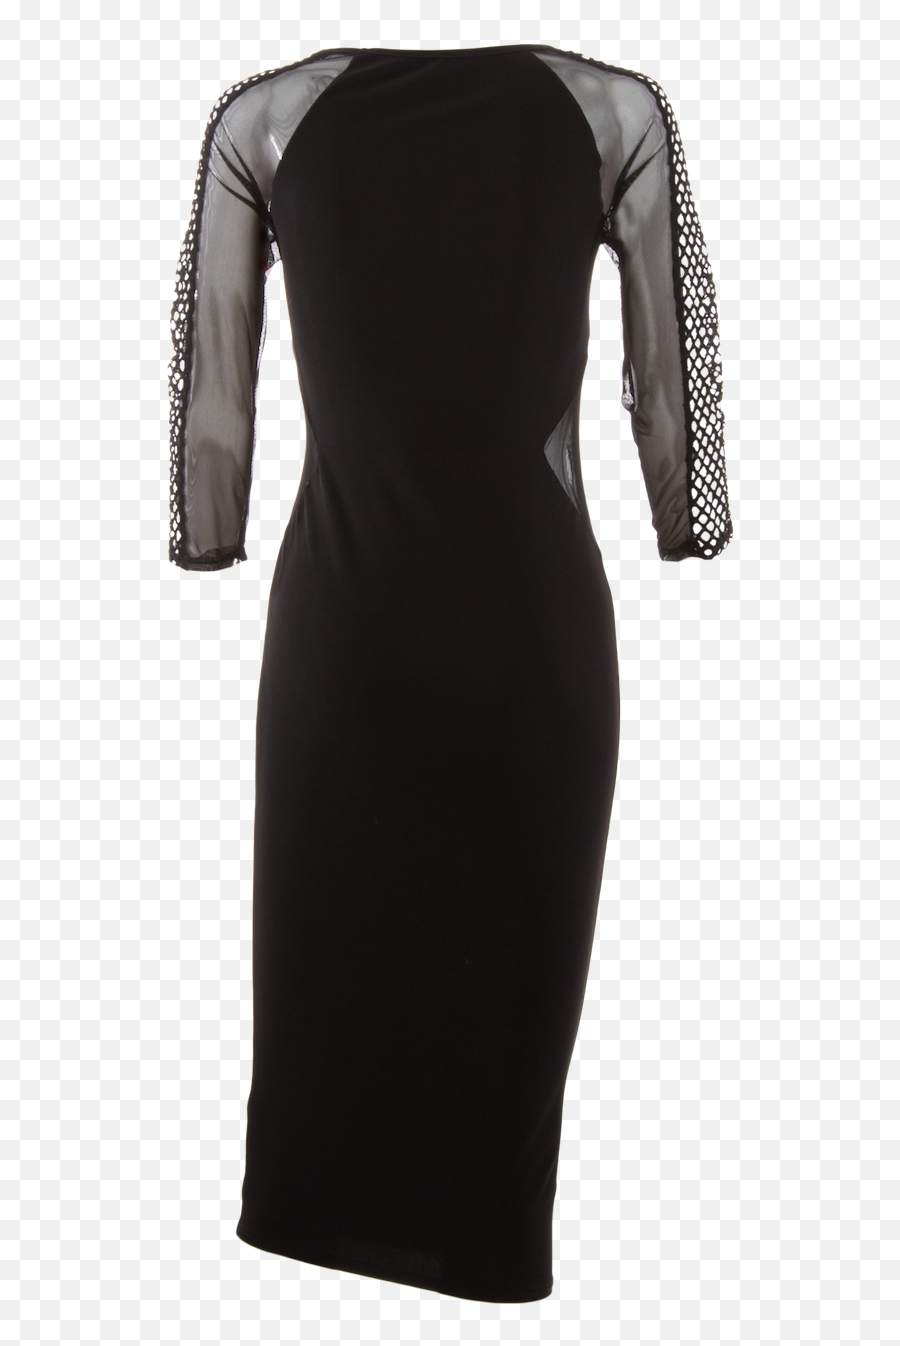 Little Black Dress - Black Dresses For Women Transparent Sleeves Png,Black Dress Png